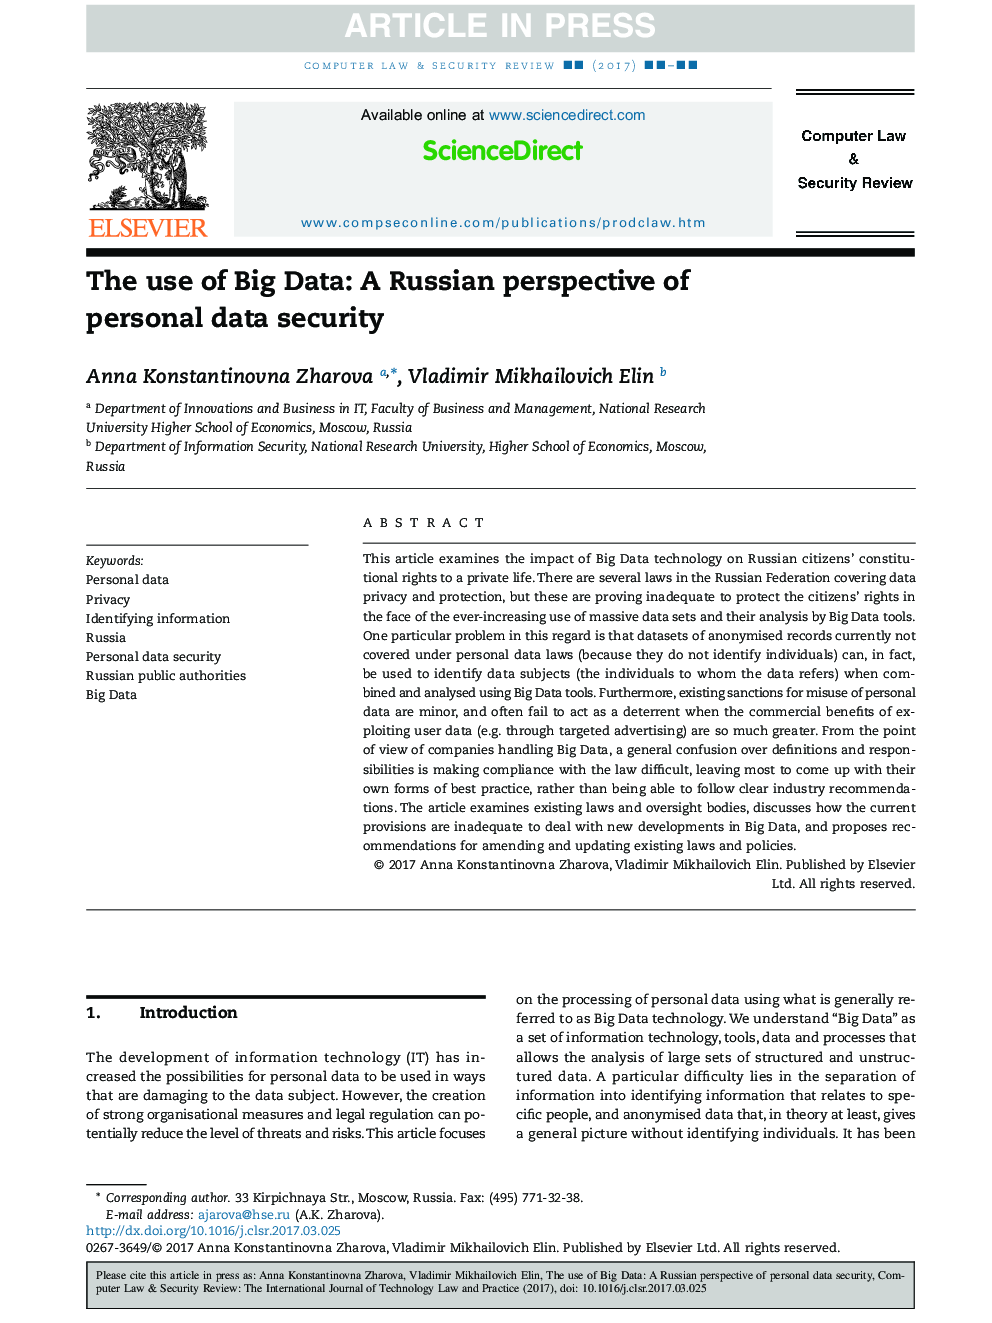 استفاده از داده های بزرگ: دیدگاه روسیه از امنیت اطلاعات شخصی 